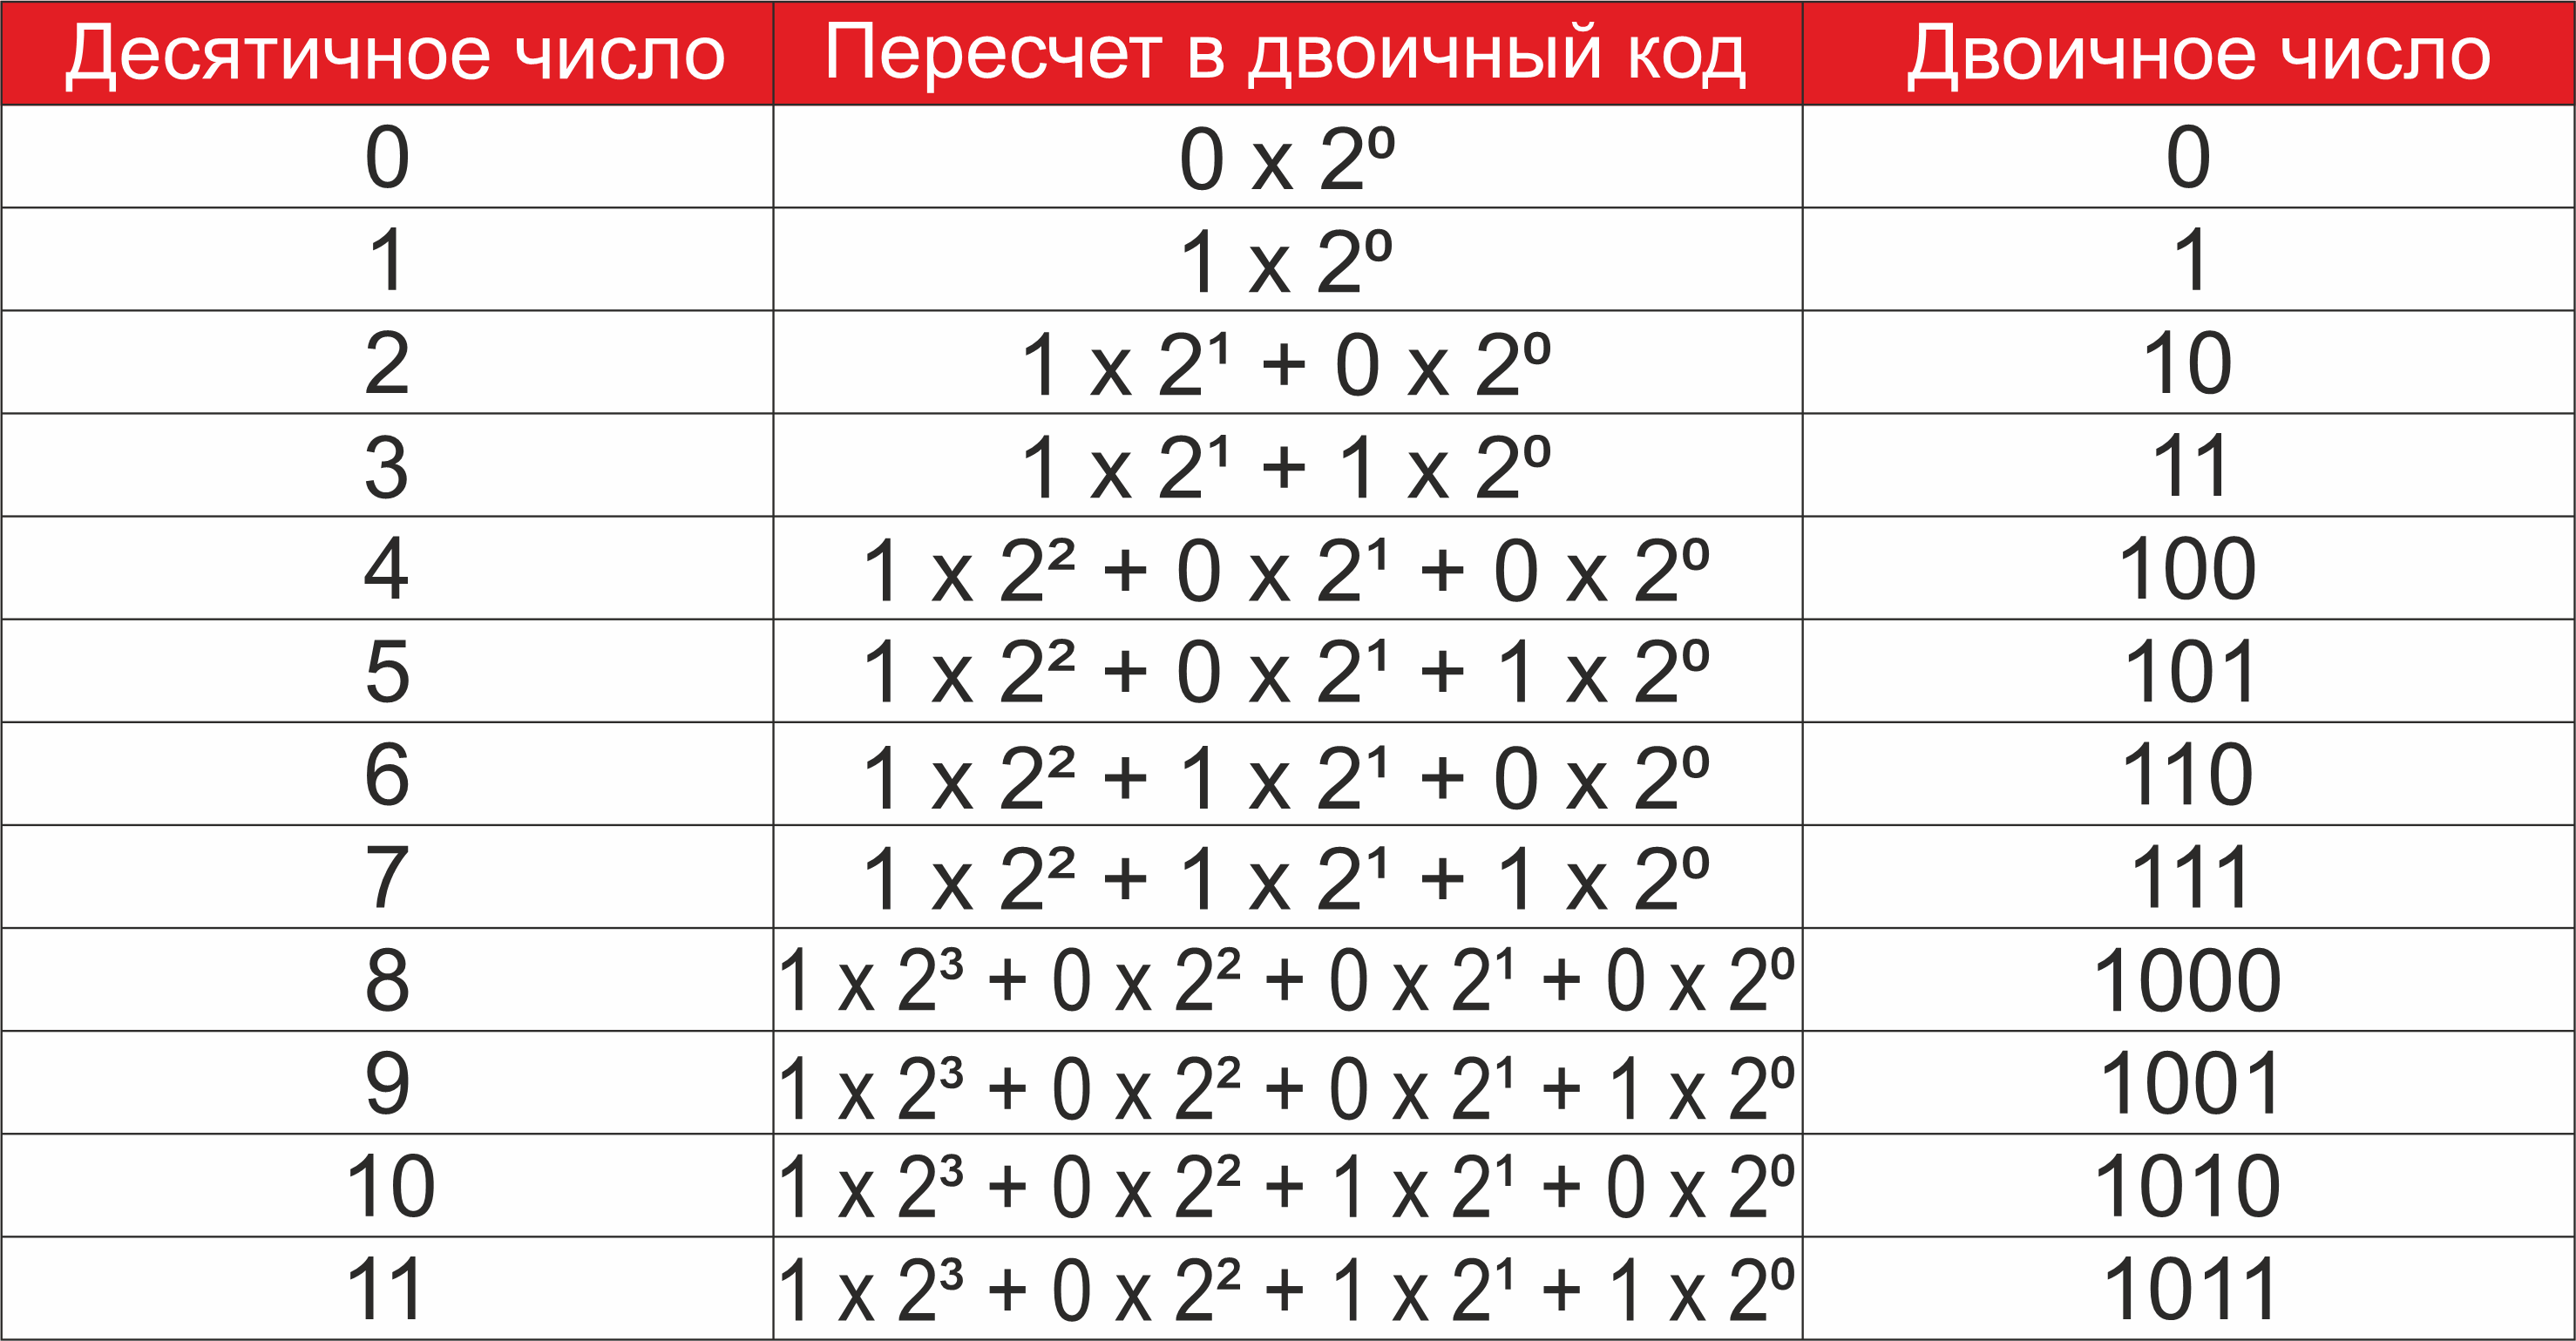 Перевод числа из десятичной в двоичную систему счисления